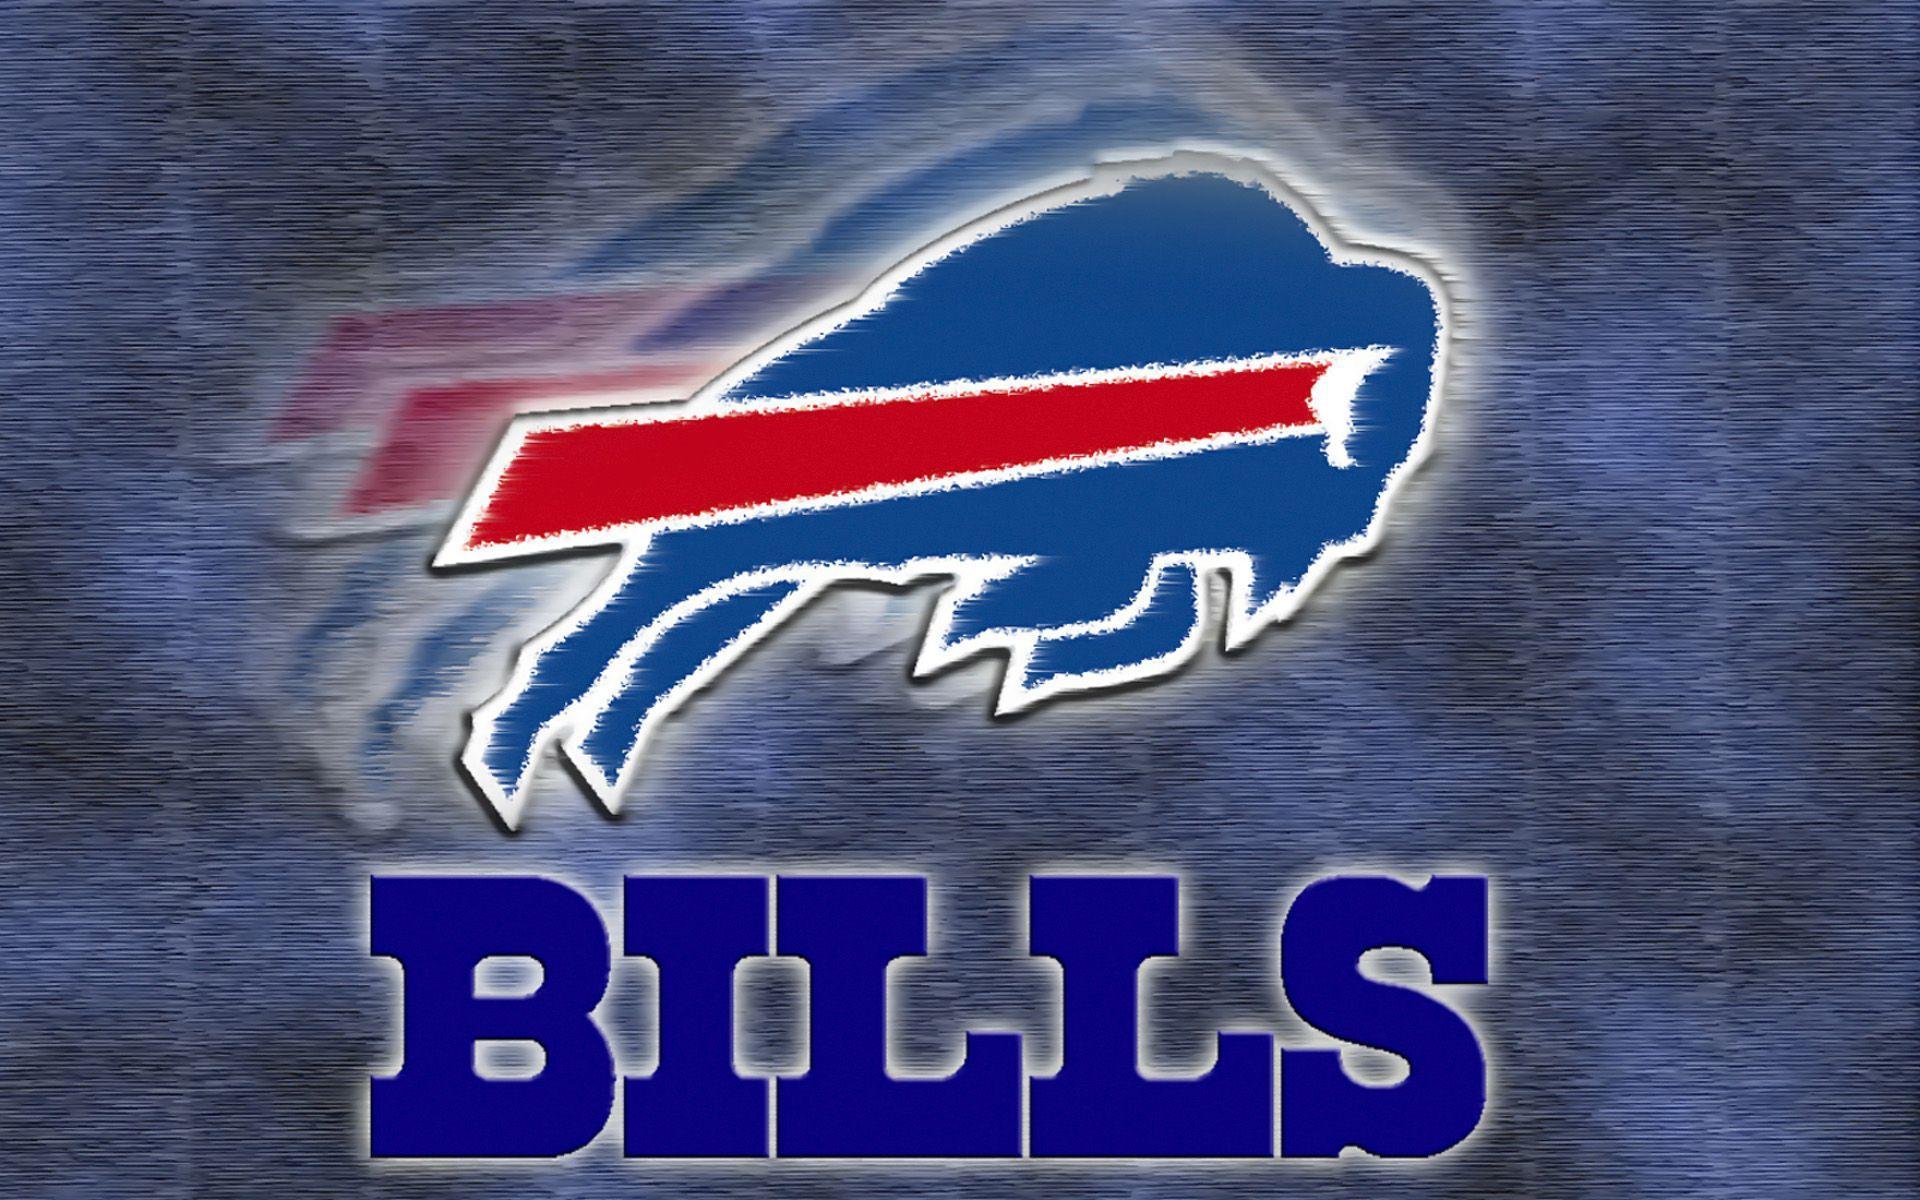 Buffalo Bills Background